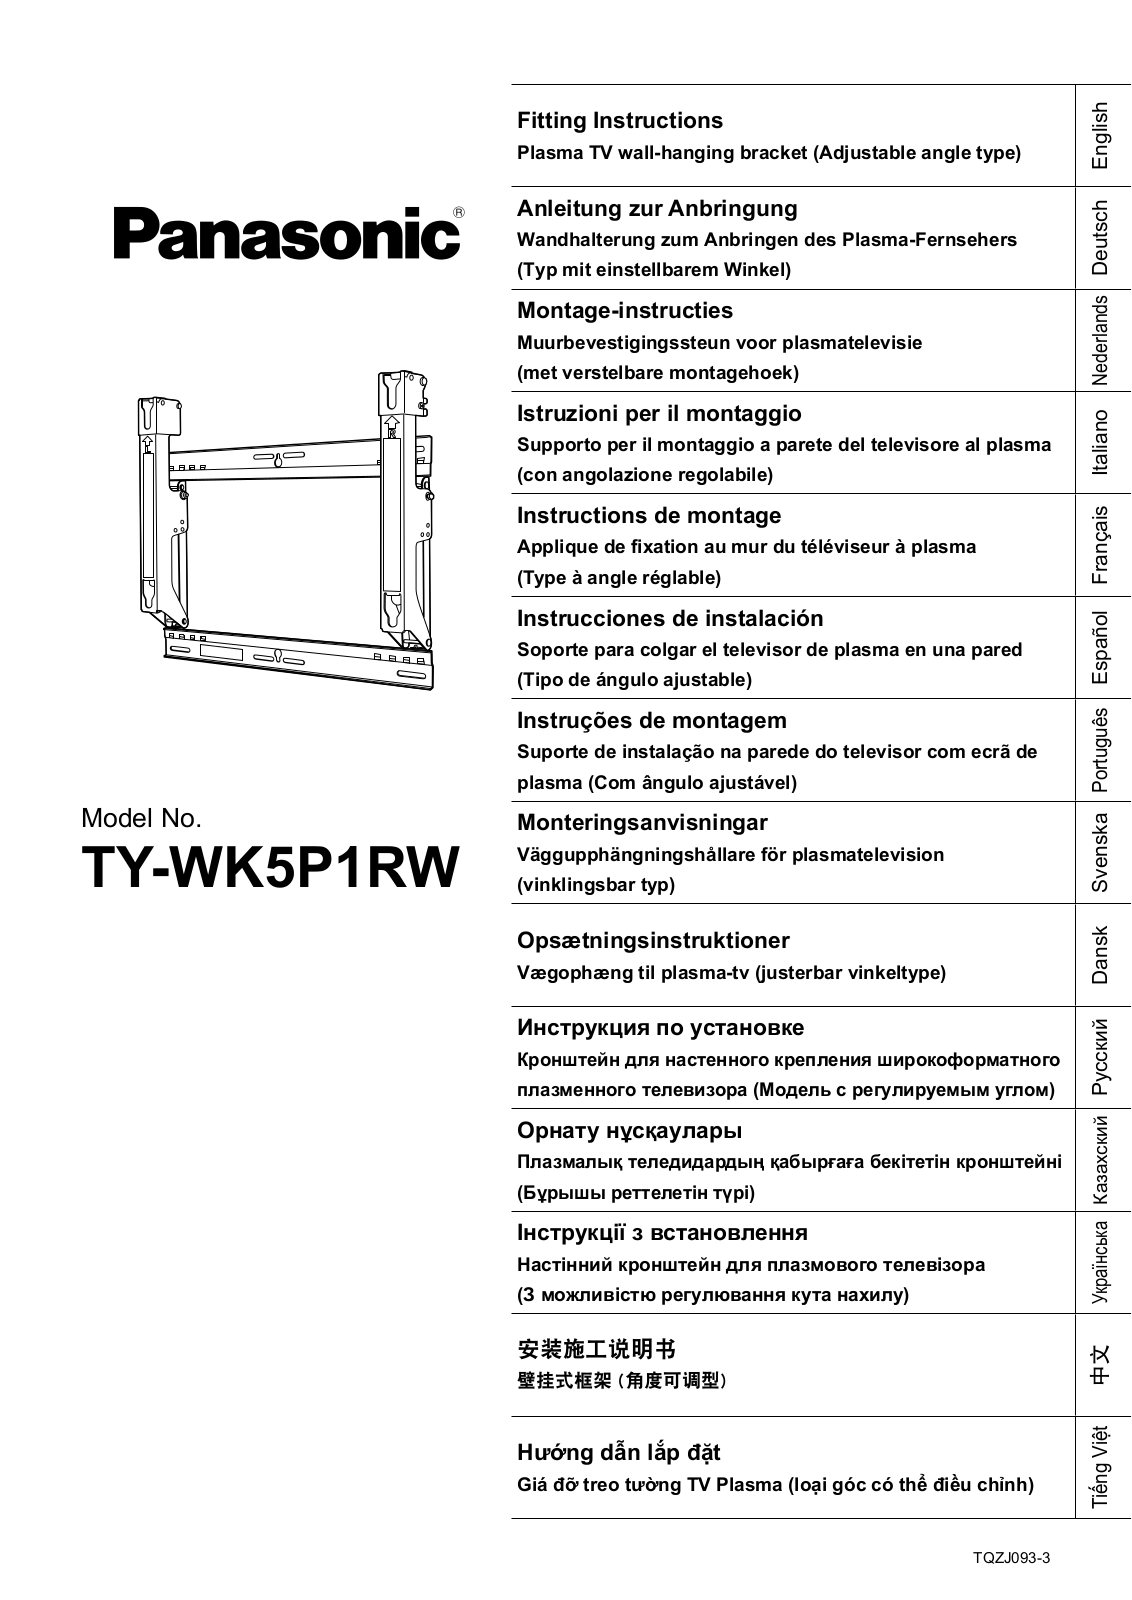 Panasonic TYWK5P1RW User Manual